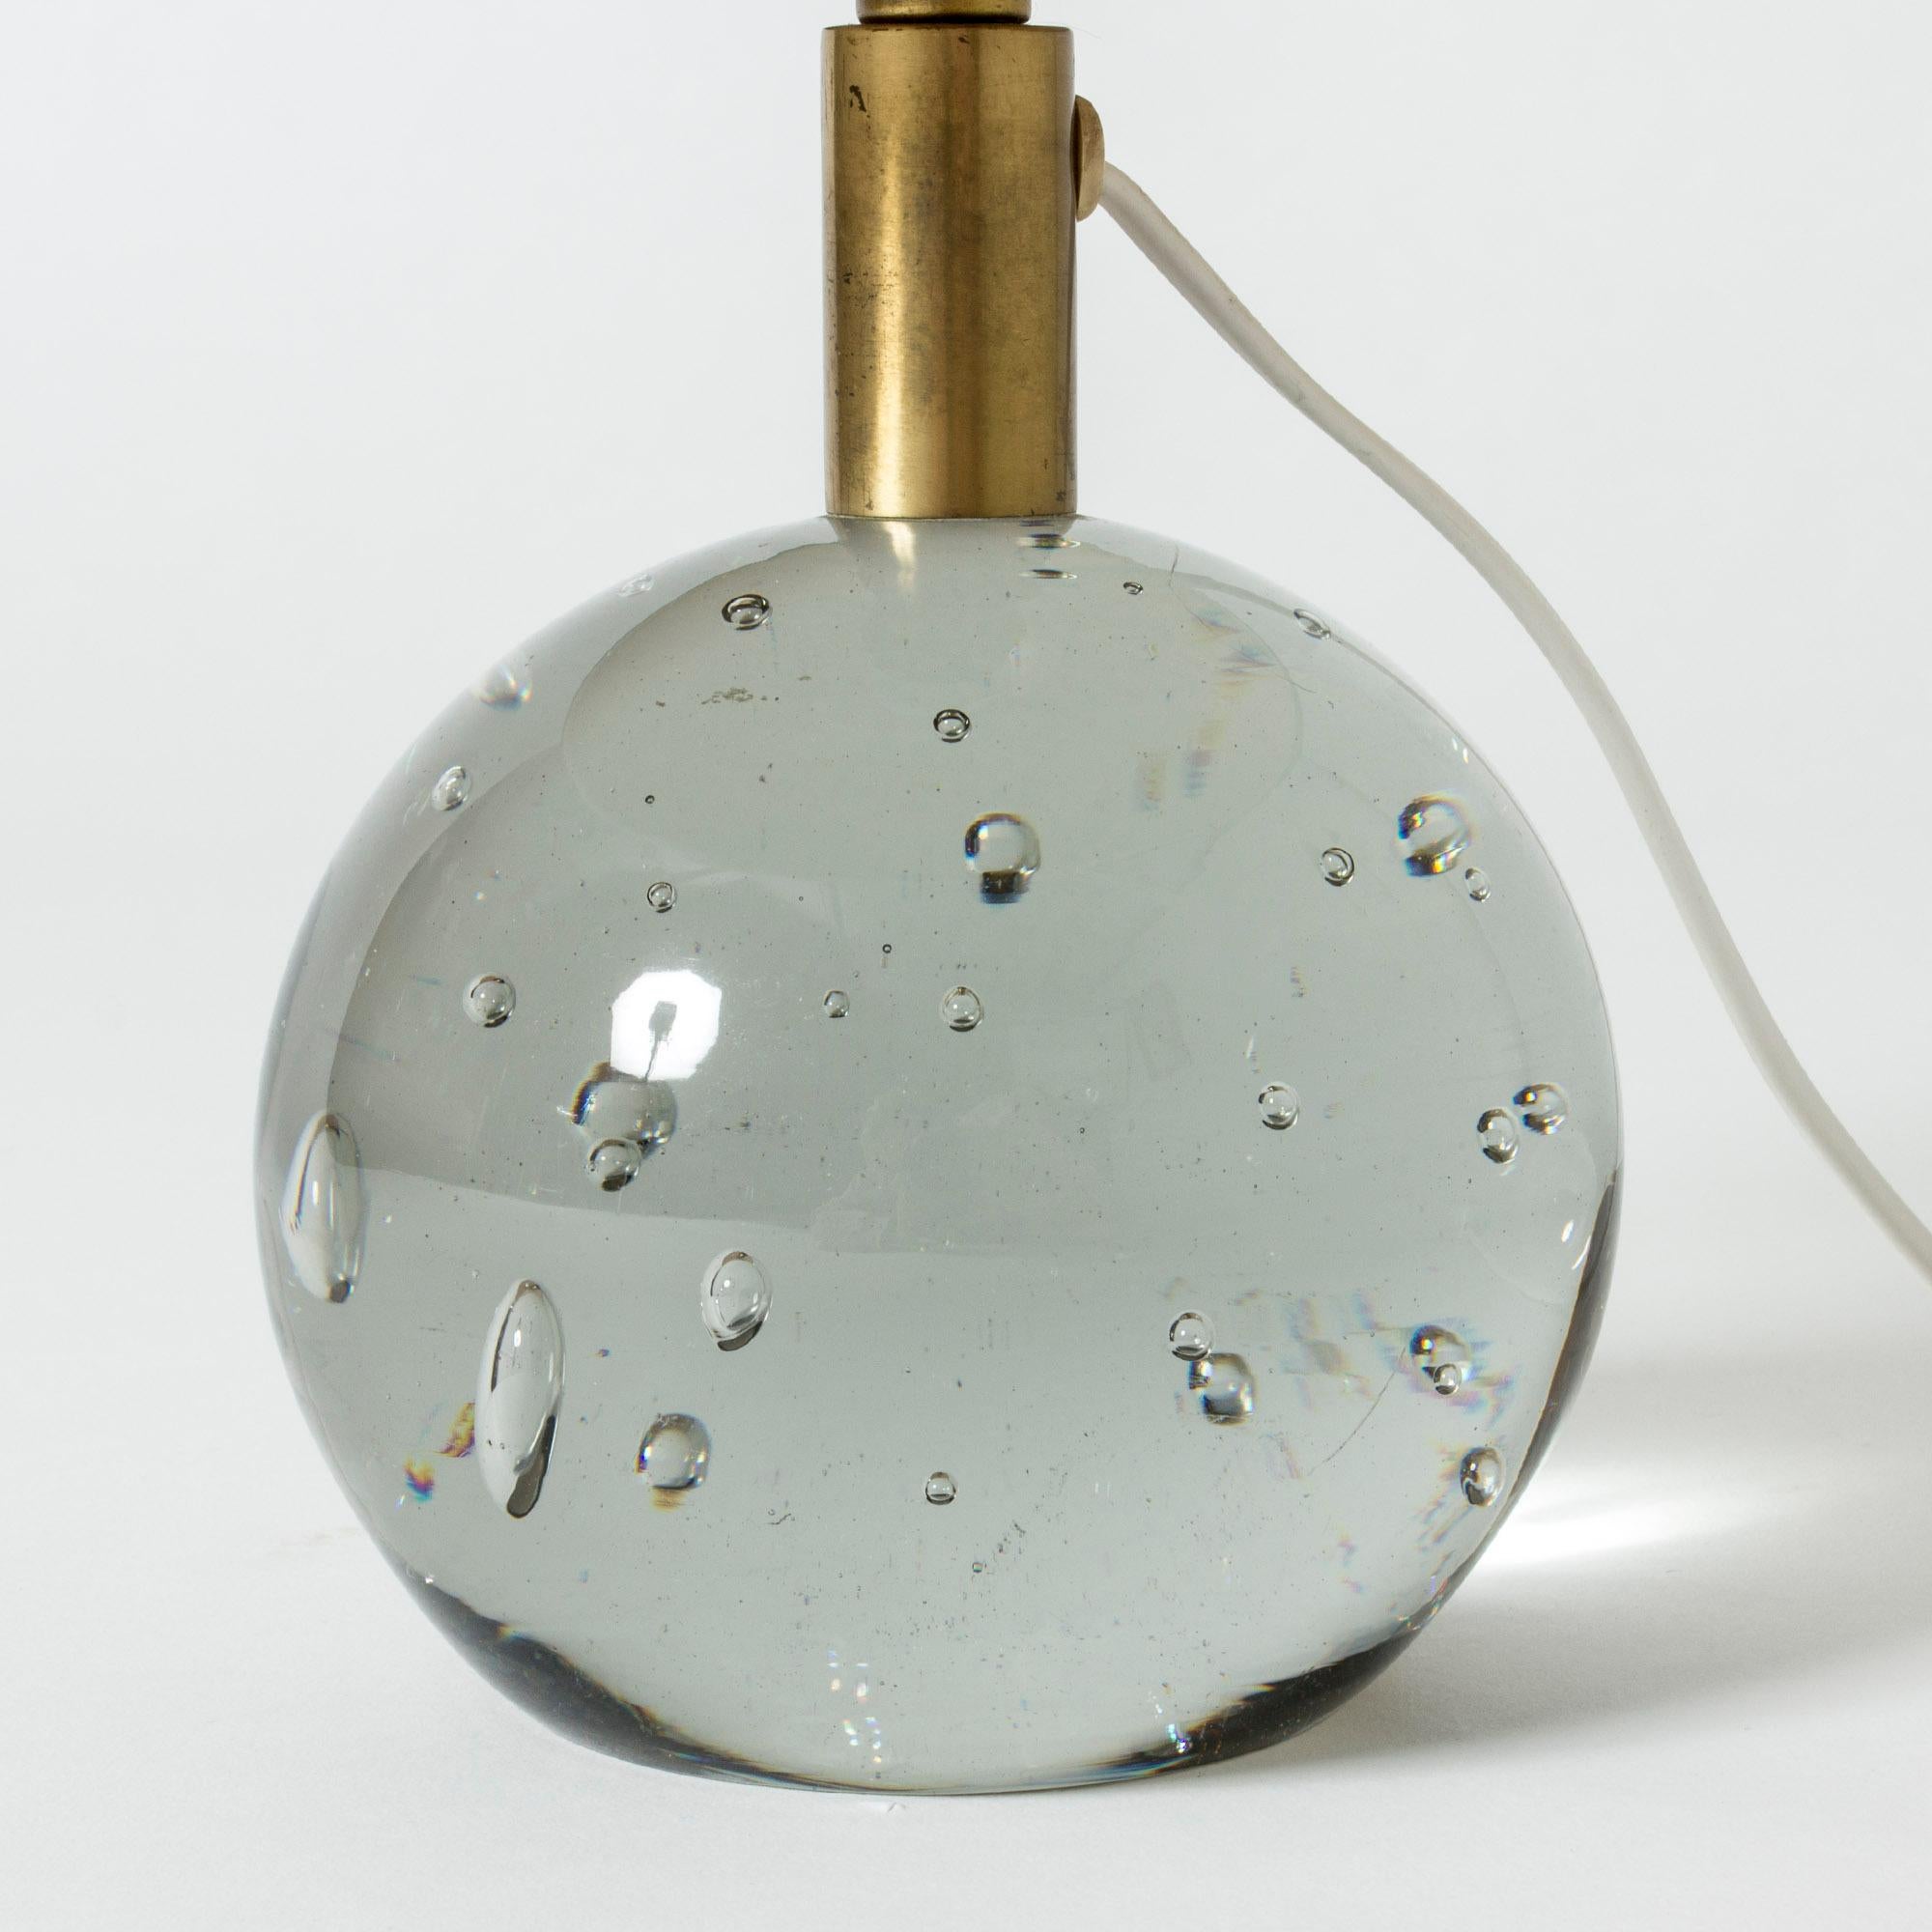 Swedish Glass Table Lamp Designed by Josef Frank for Svenskt Tenn, Sweden, 1940s